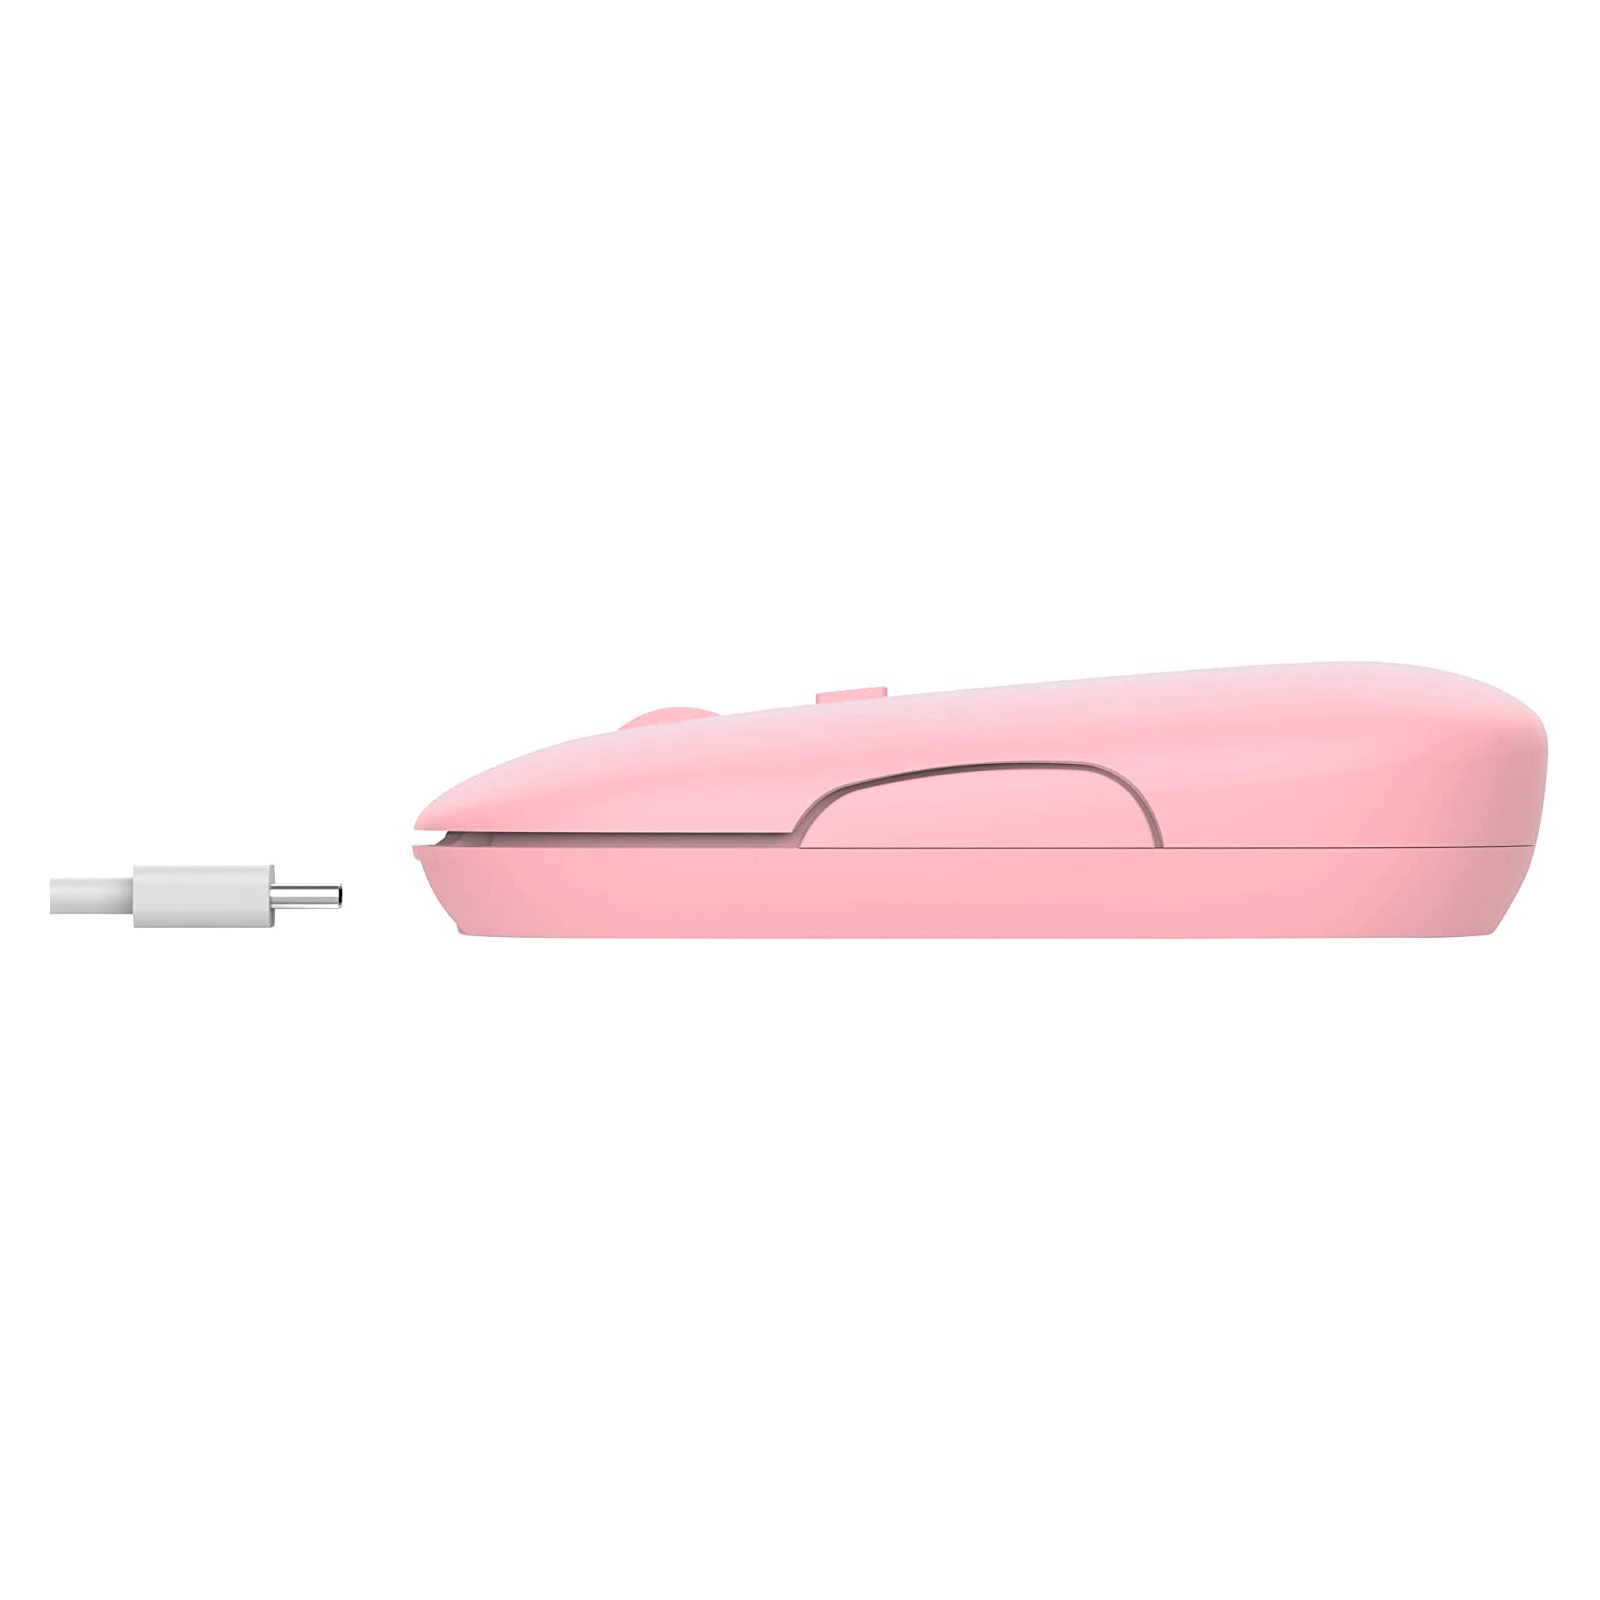 Мышка Trust Puck Wireless/Bluetooth Silent Pink (24125) изображение 5